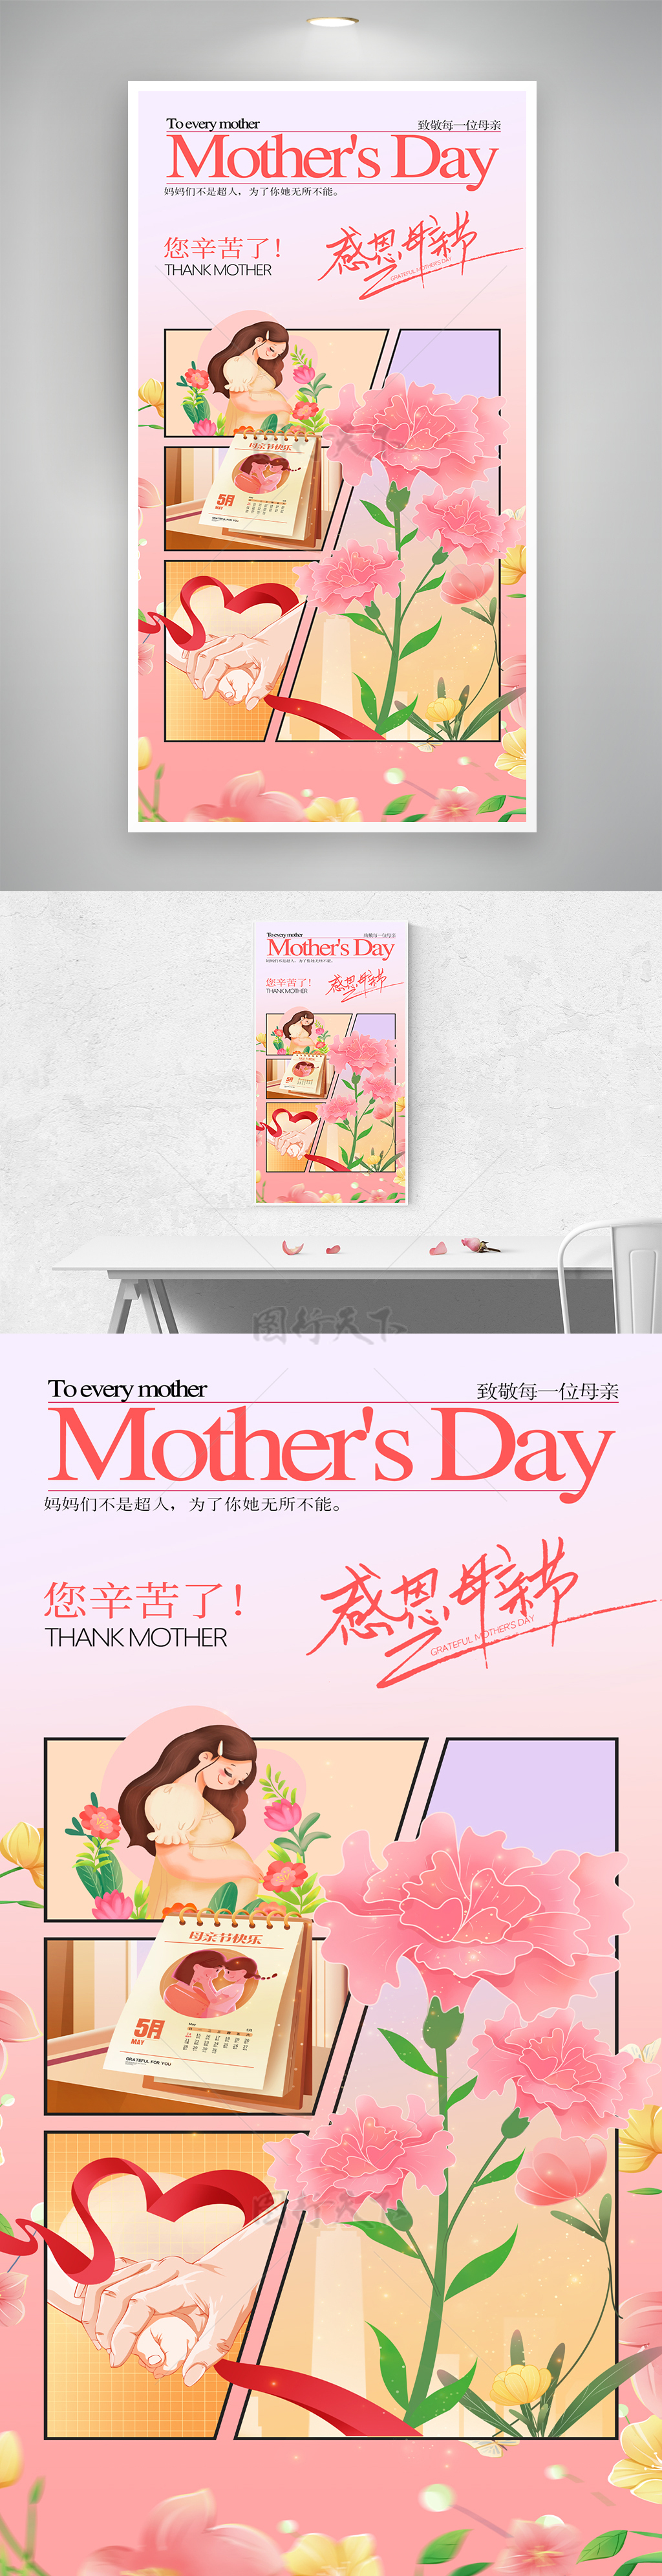 创意分镜母亲节日历康乃馨宣传海报